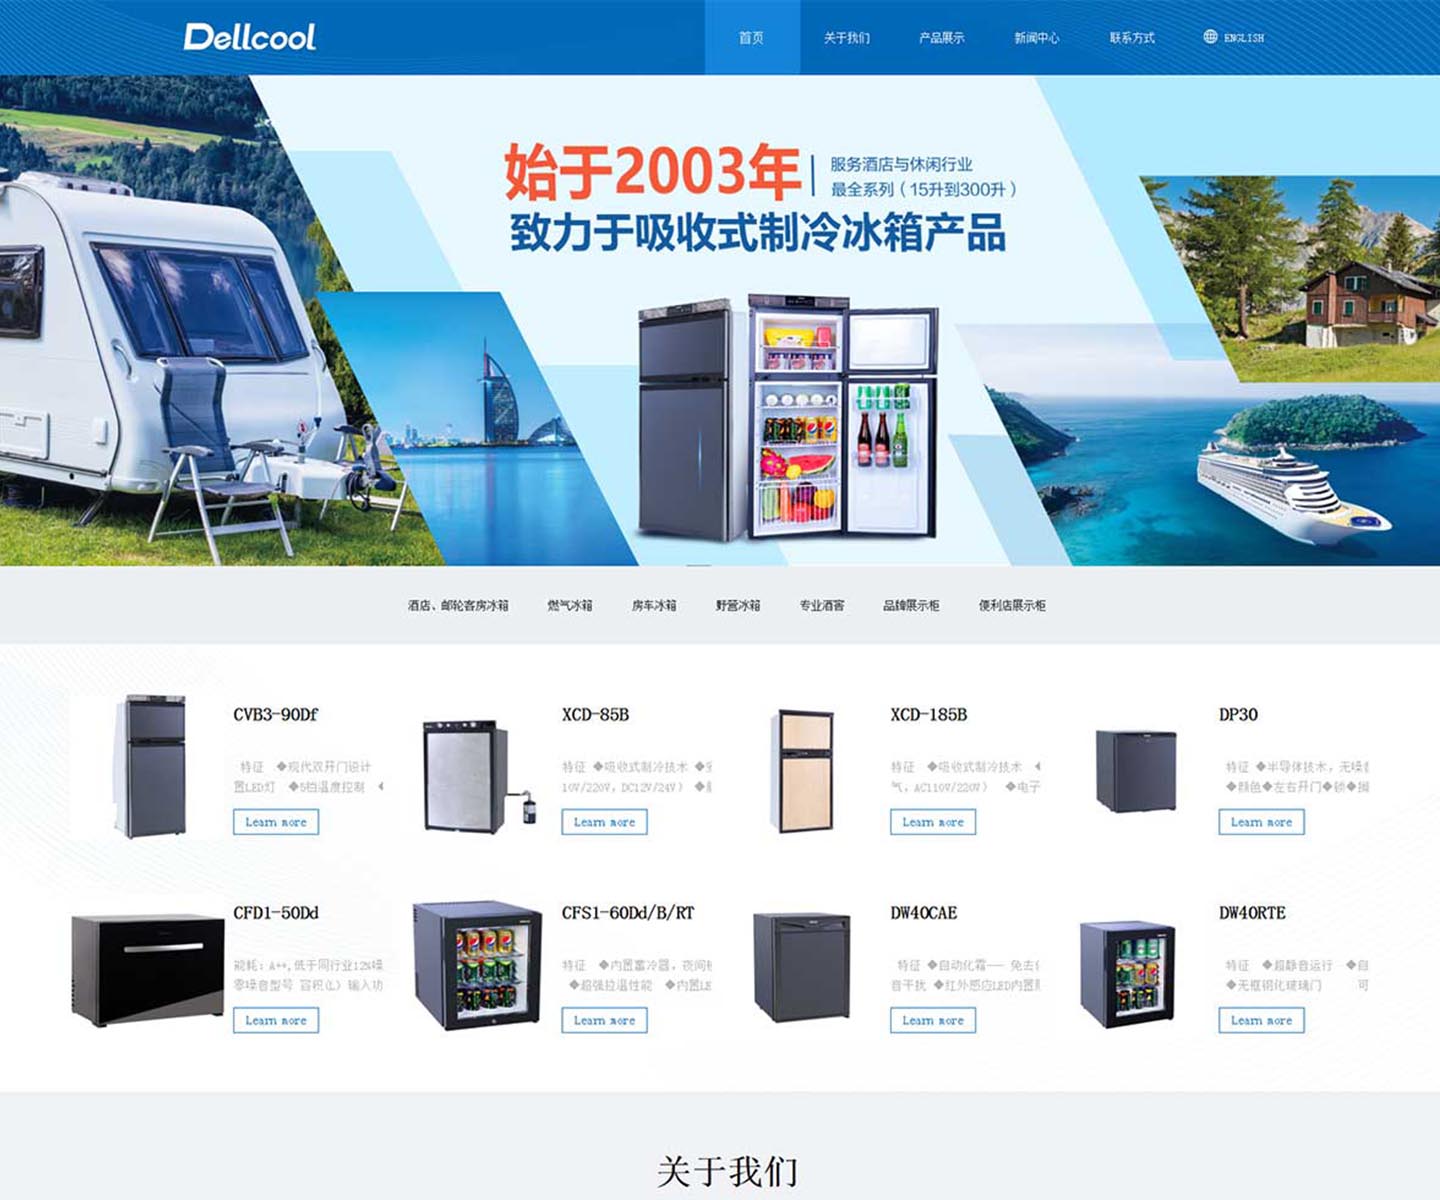 德莱维电器有限公司-中文响应式官方网站